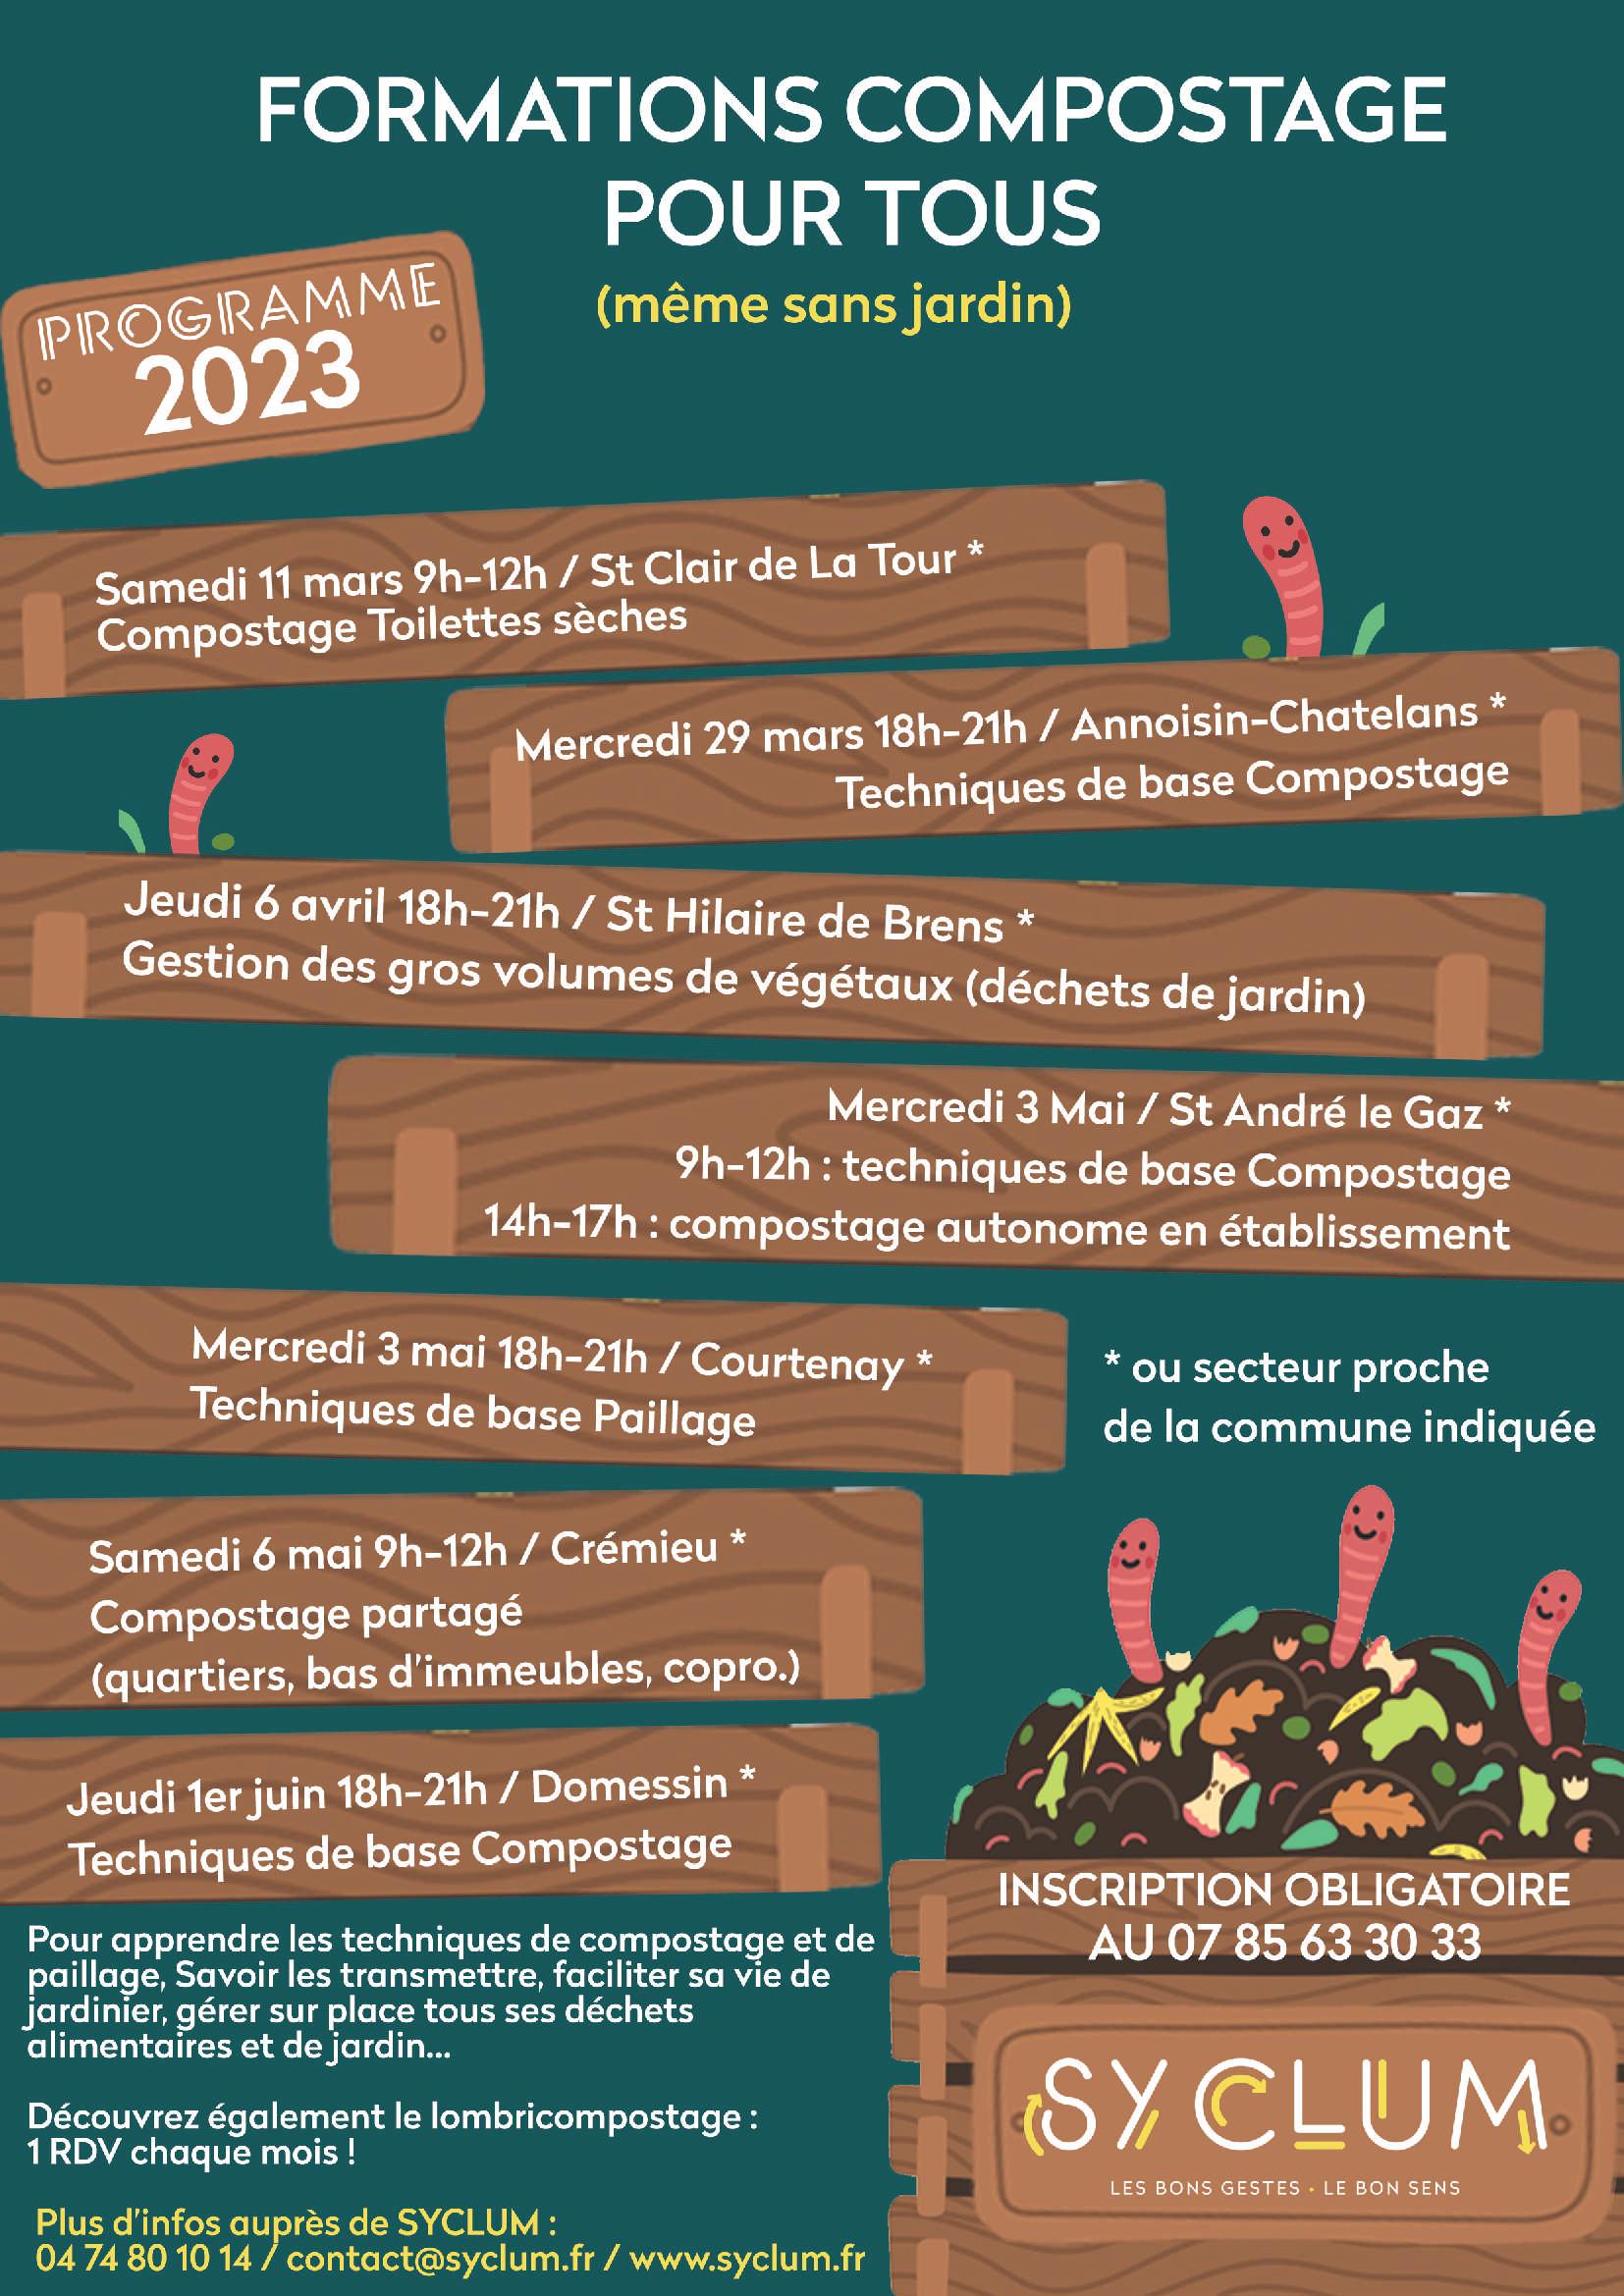 Image de couverture - SYCLUM: programme 2023 des formations compostage et lombricompostage